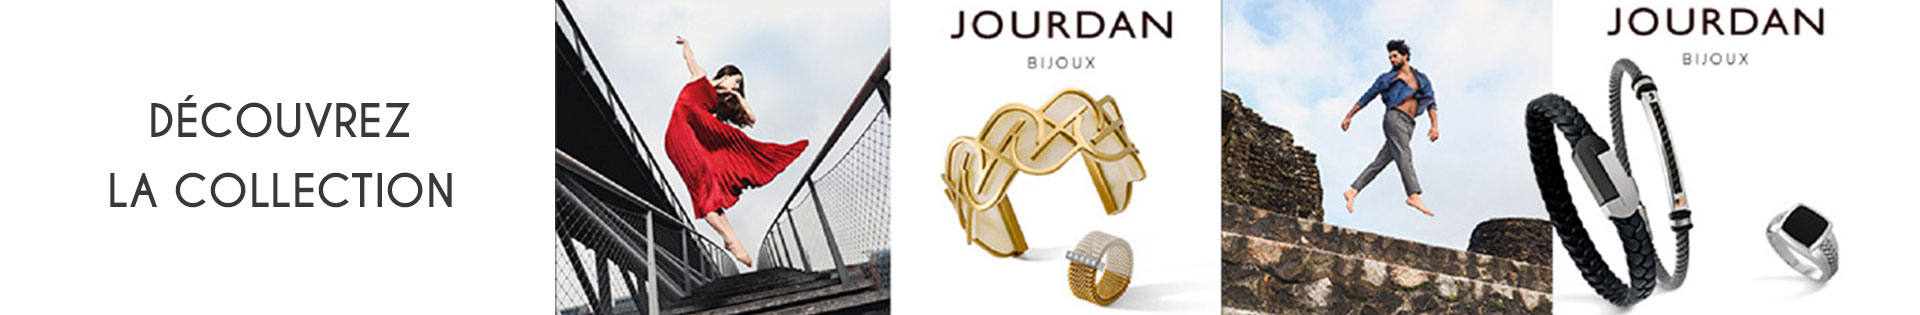 Collier - Jourdan Bijoux - or 375 millièmes - or 750 millièmes - Argent